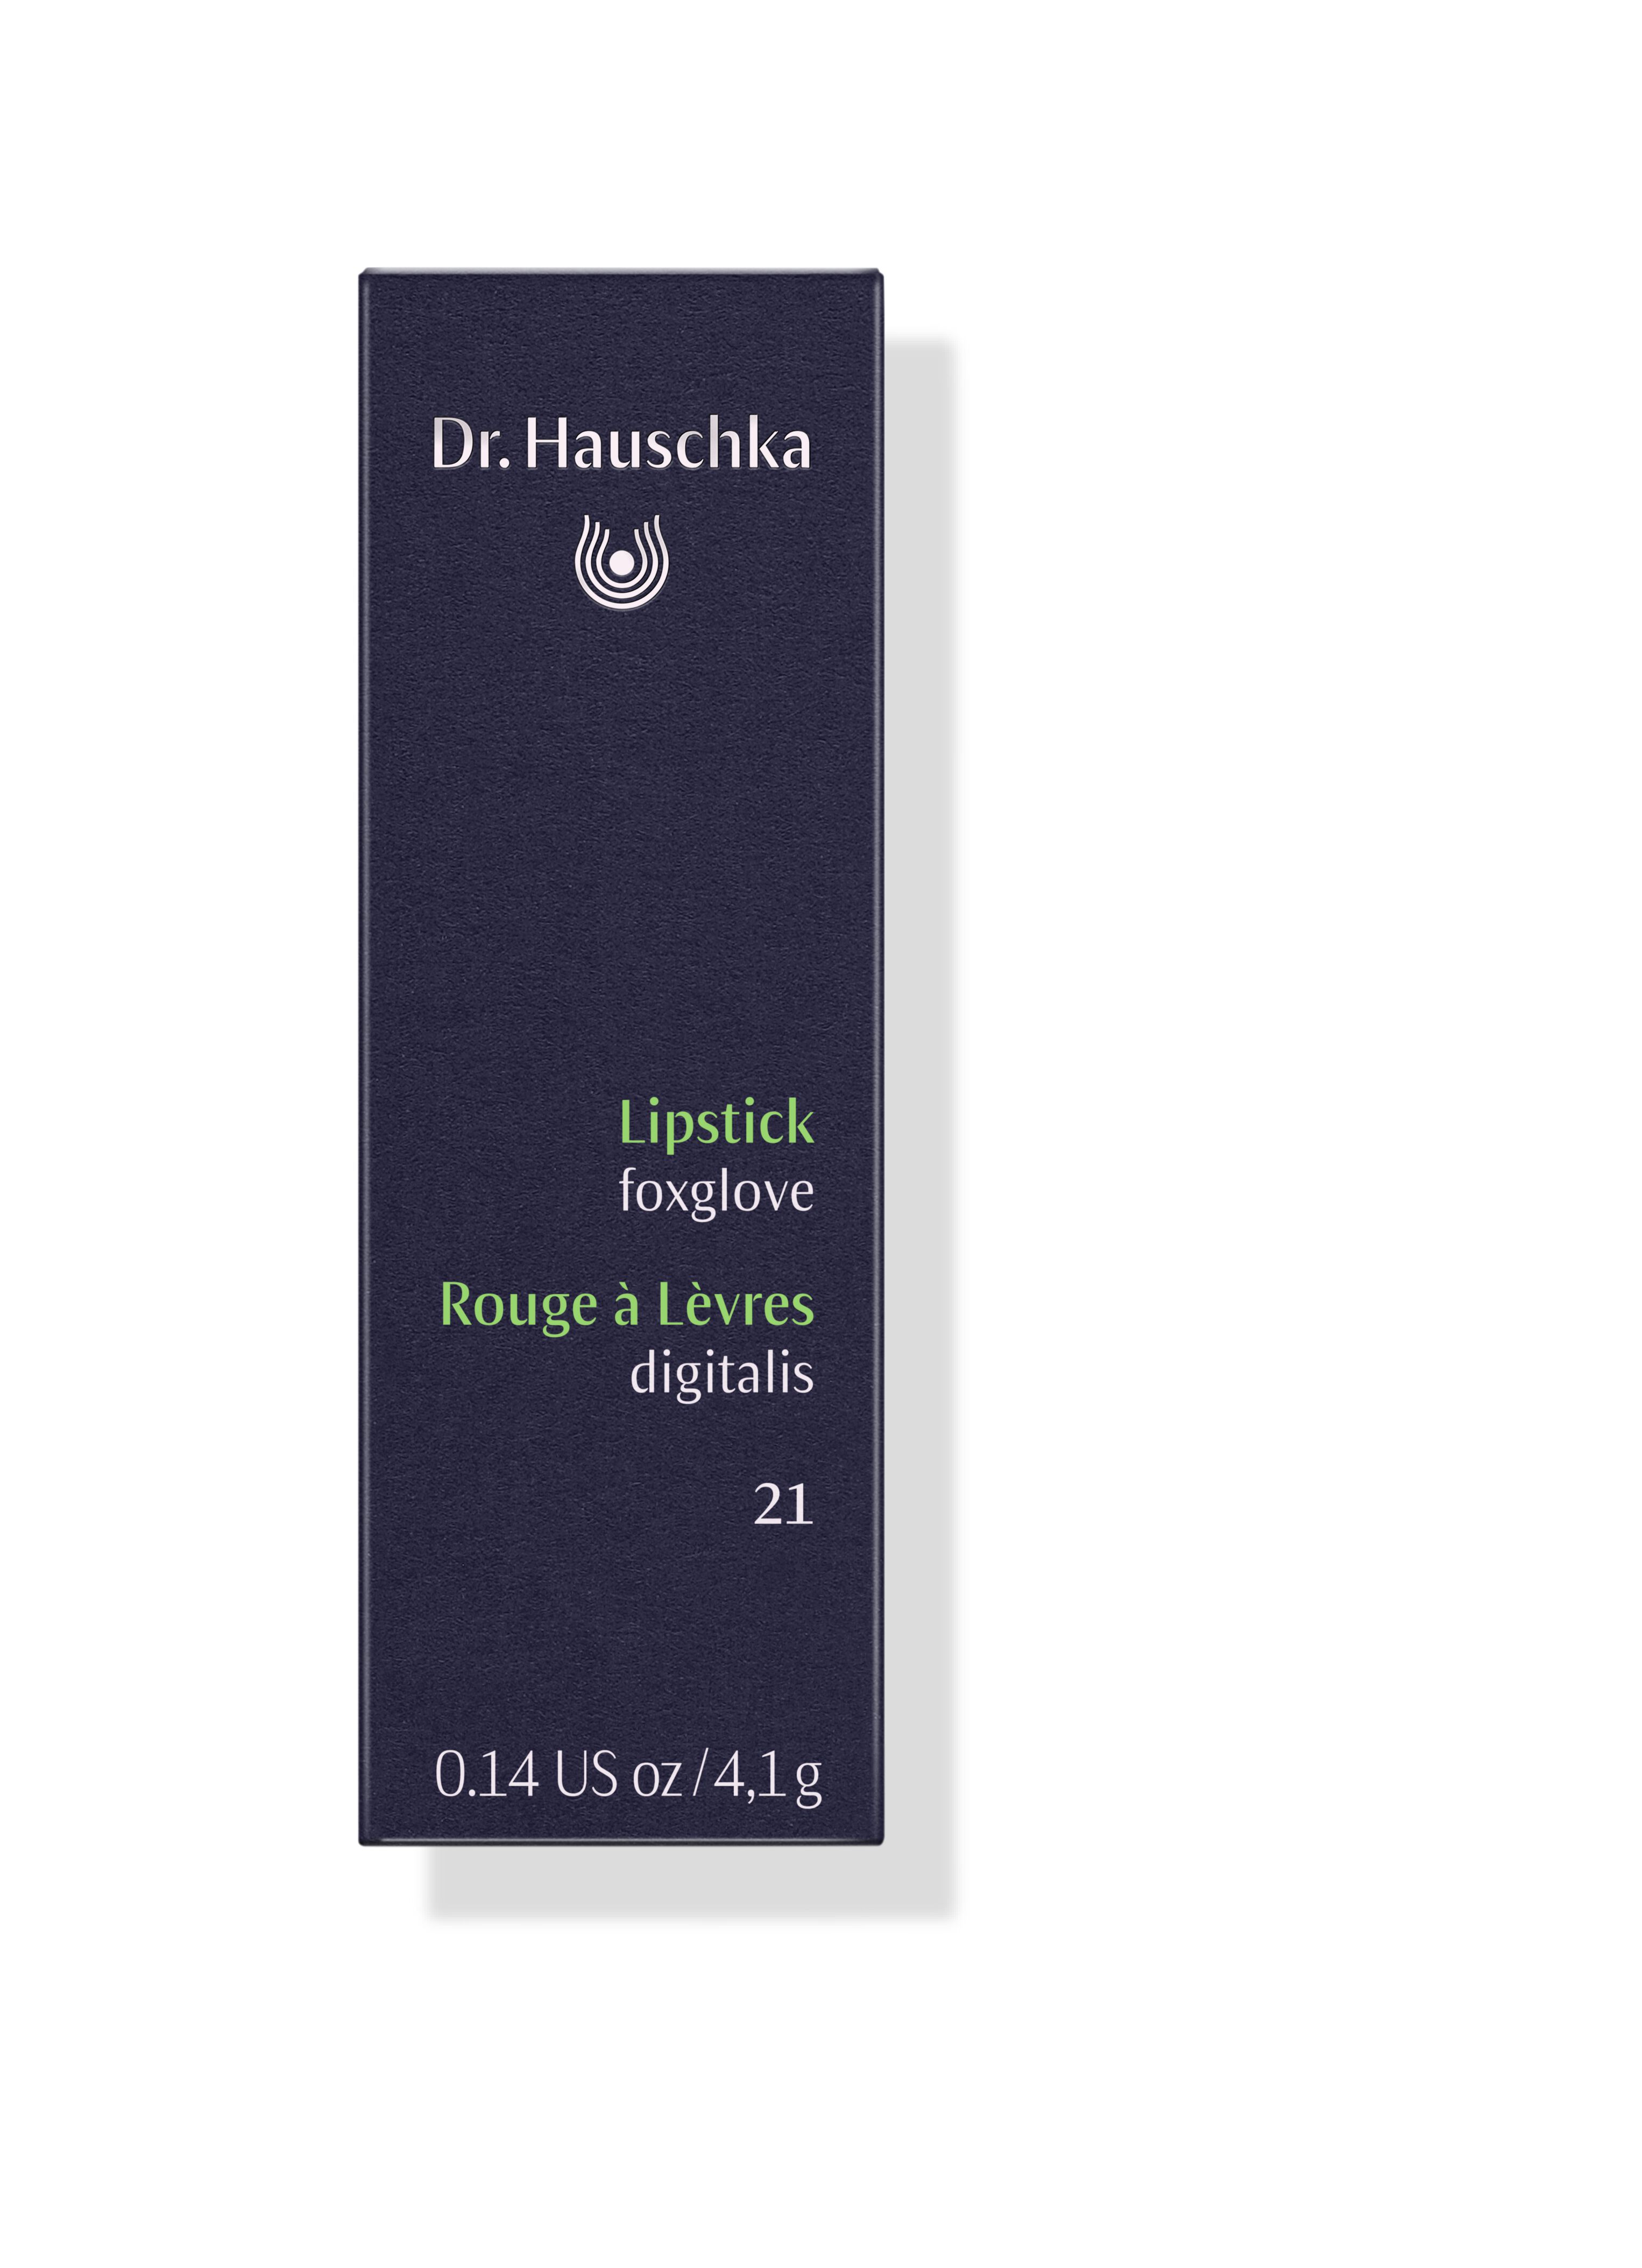 DR.HAUSCHKA Lipstick 21 foxglove